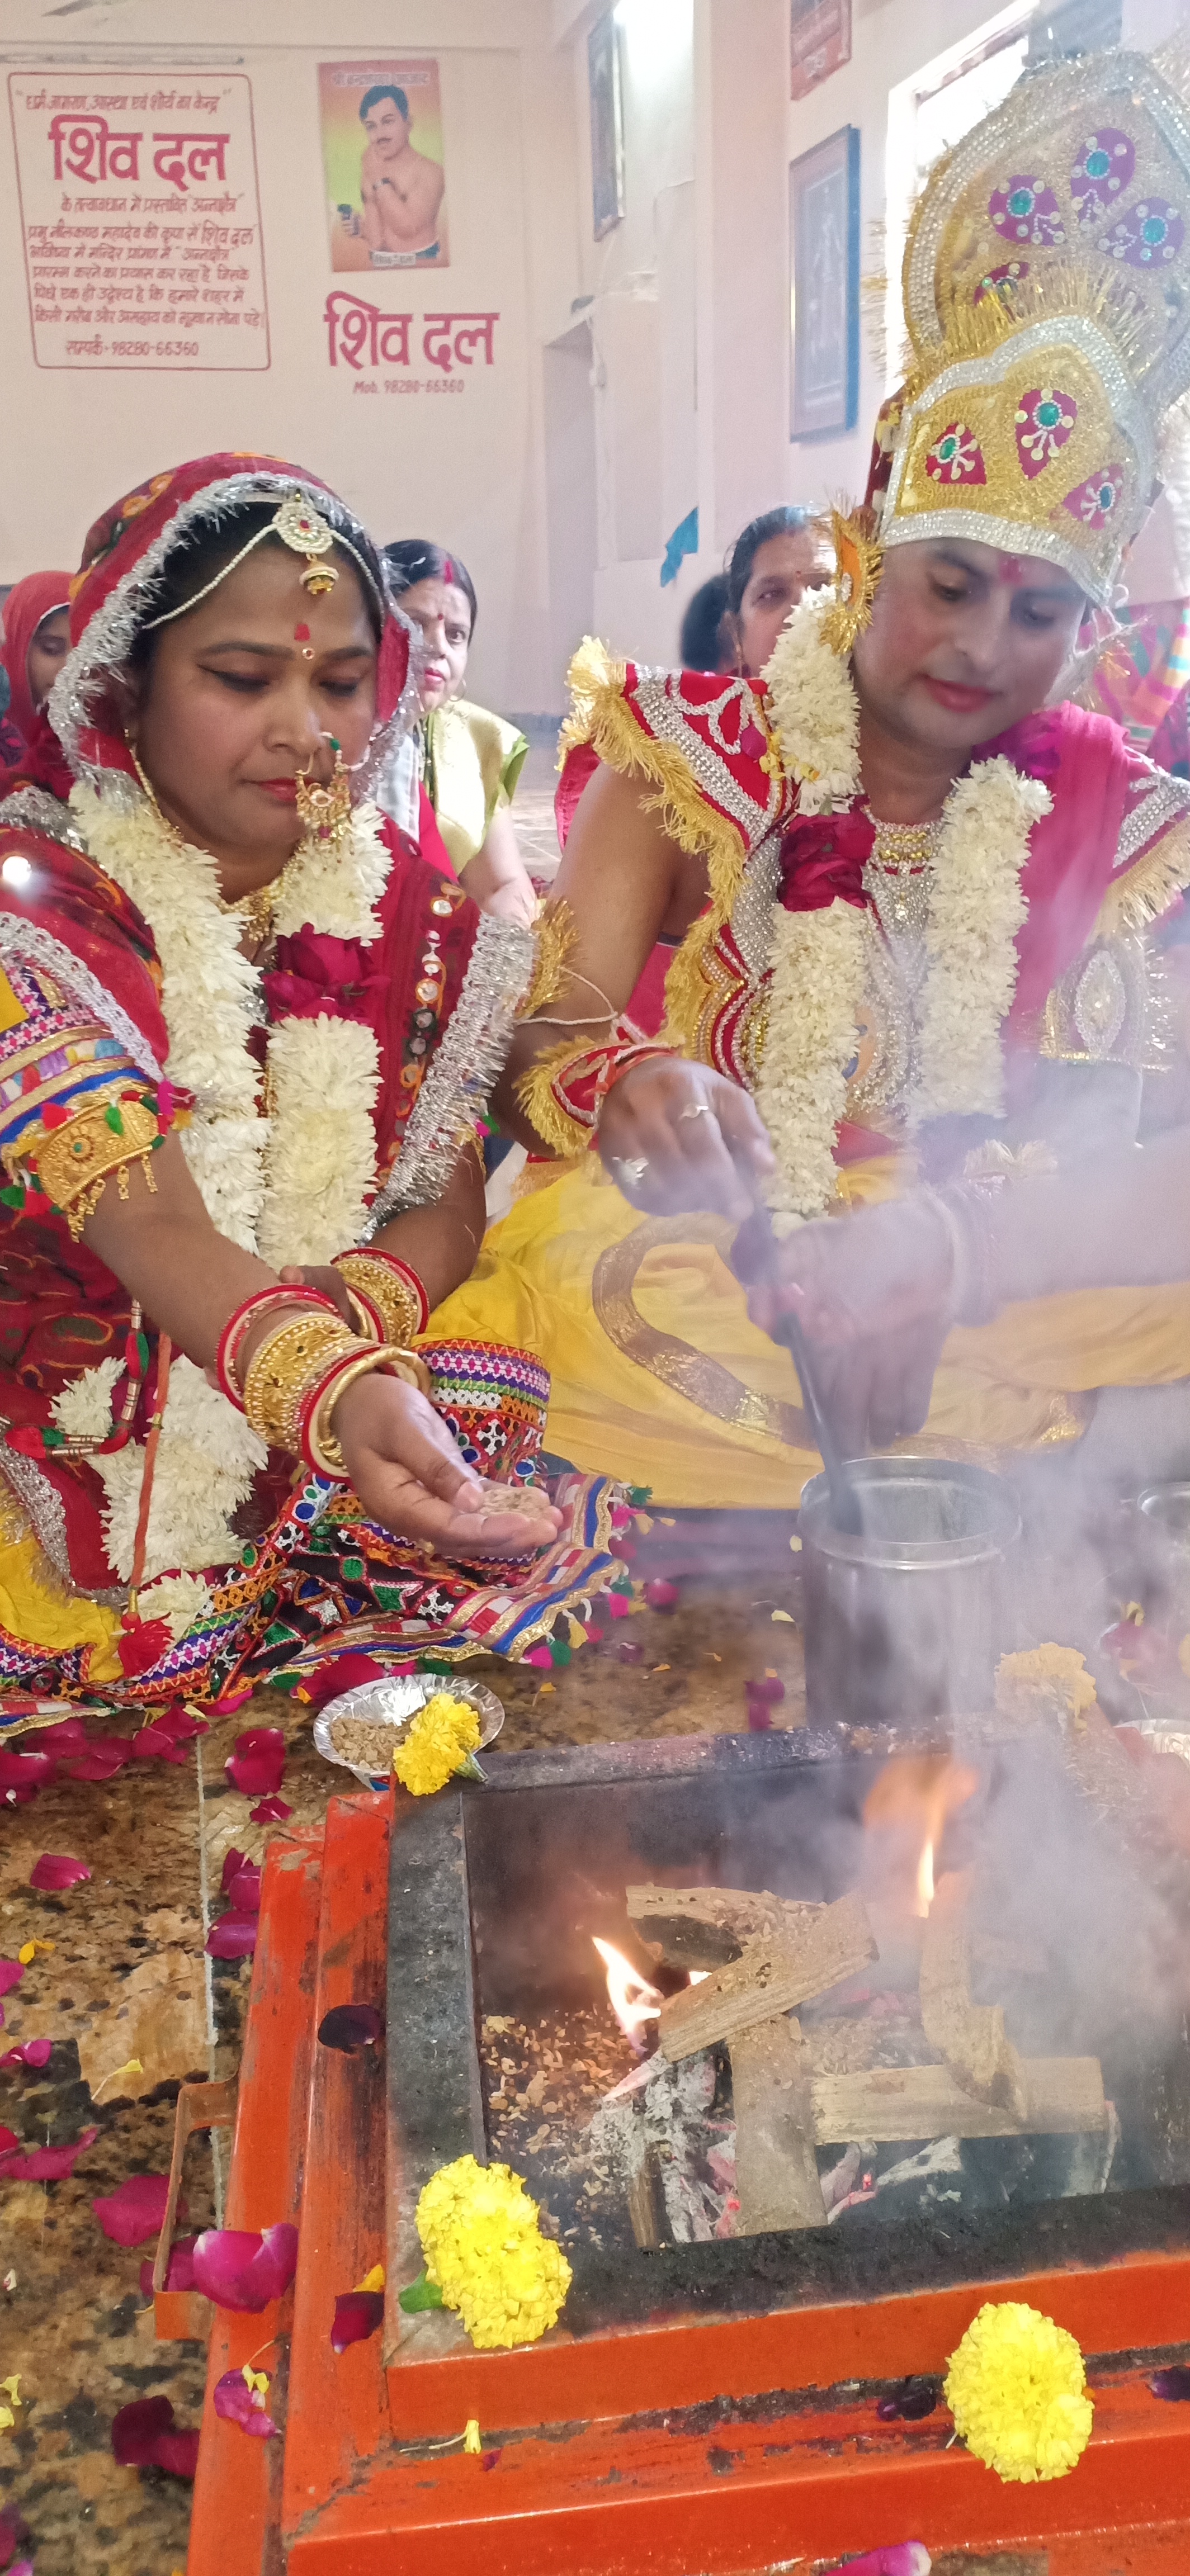 धूमधाम से हुआ राम- जानकी का विवाह, निकली राम जी की बारात